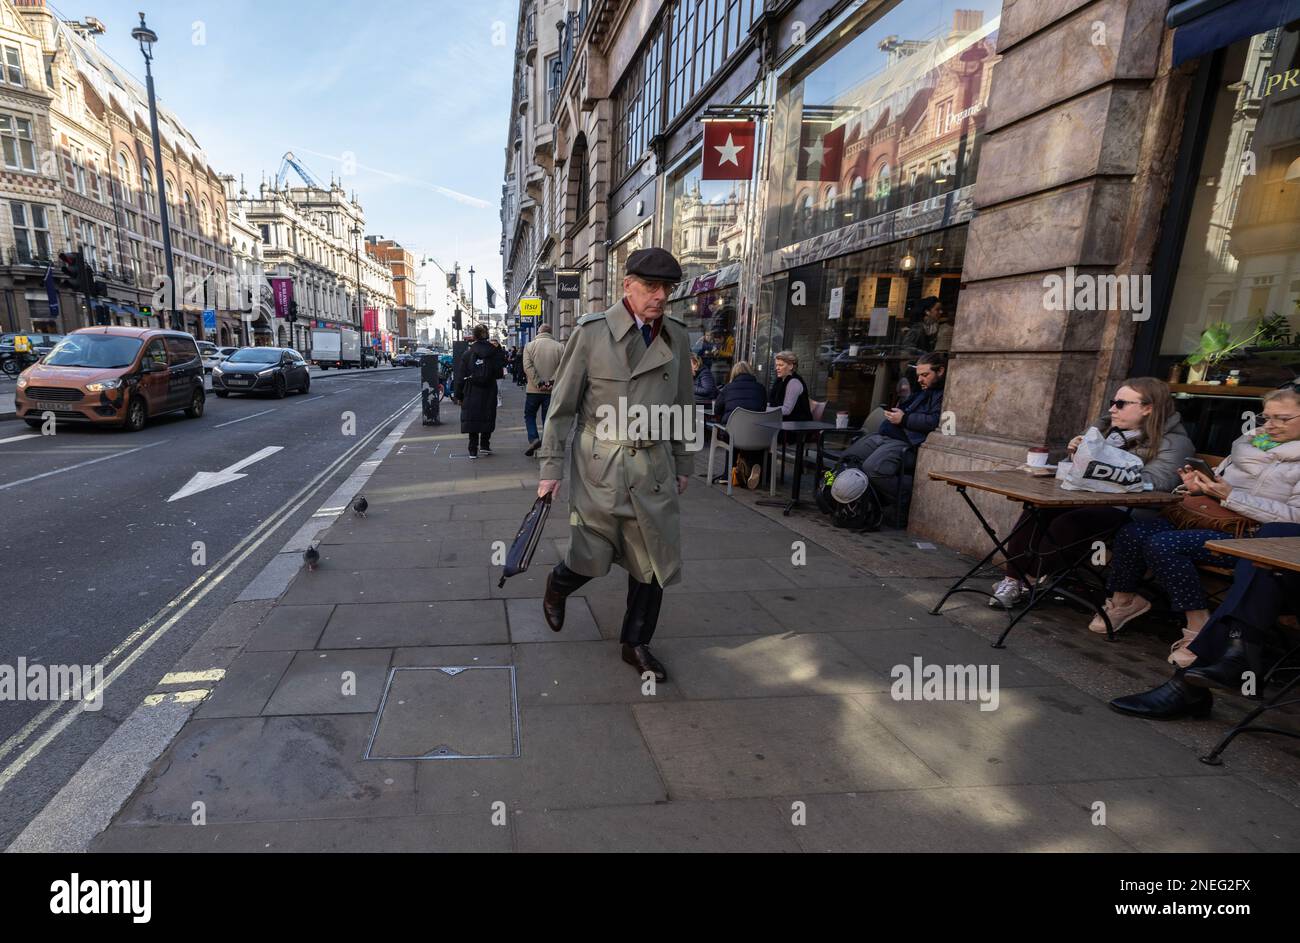 Ein Mann mit Regenmantel und flacher Mütze macht sich auf den Weg nach Piccadilly im Zentrum Londons, während die Leute draußen sitzen, England, Großbritannien Stockfoto